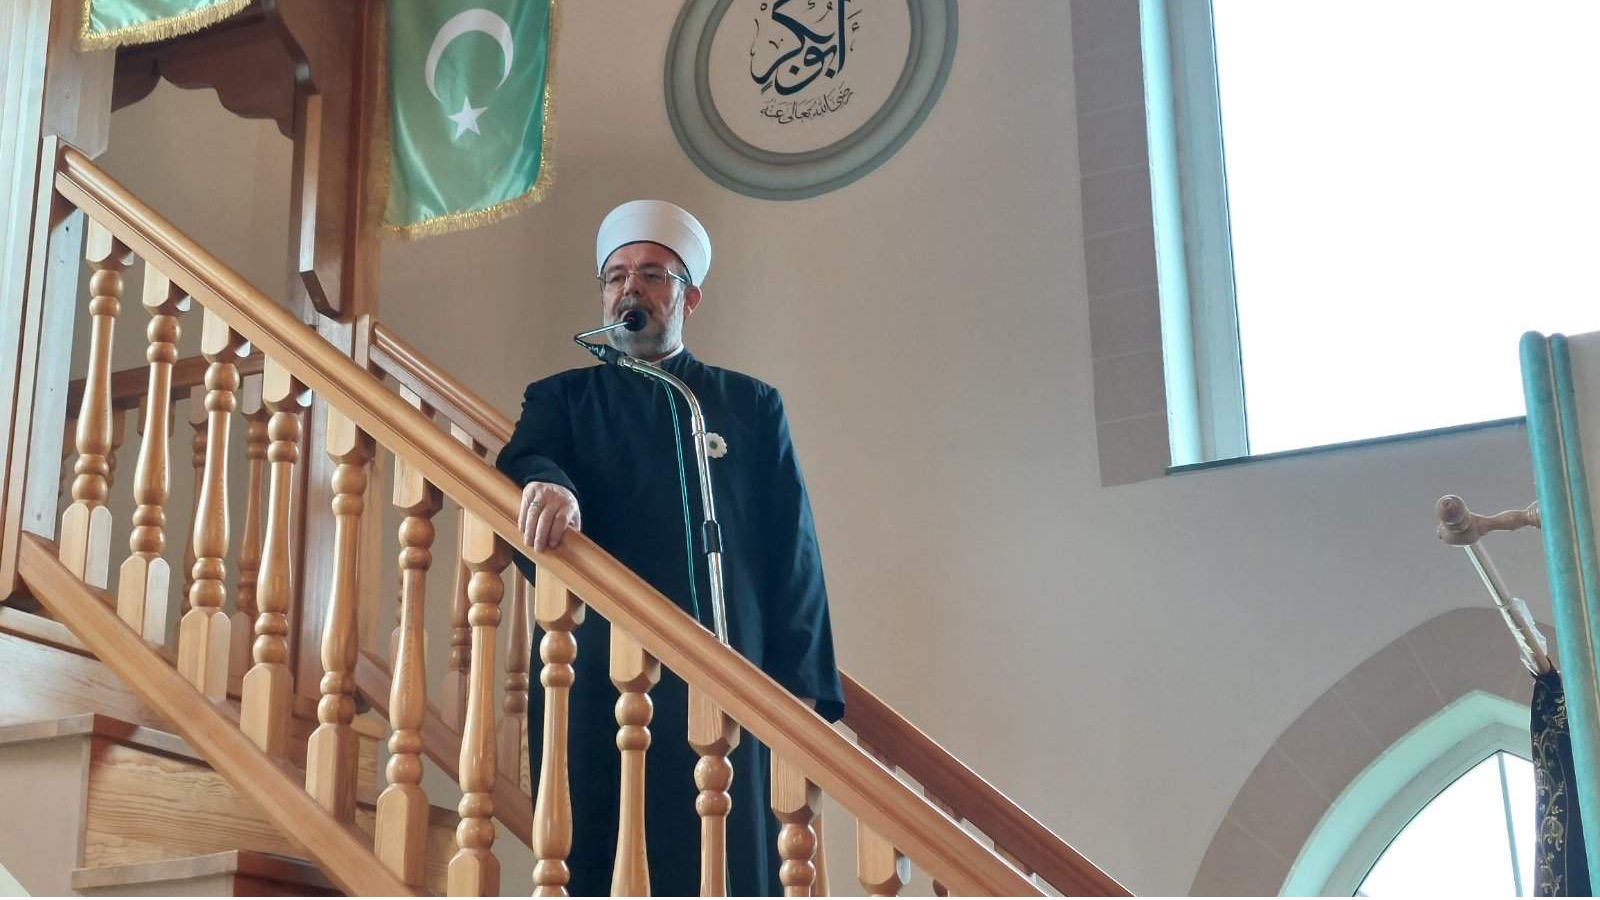  Gormez: Godišnjica Turhan Emin-begove džamije u Ustikolini je veliki dan za ukupnu historiju islama